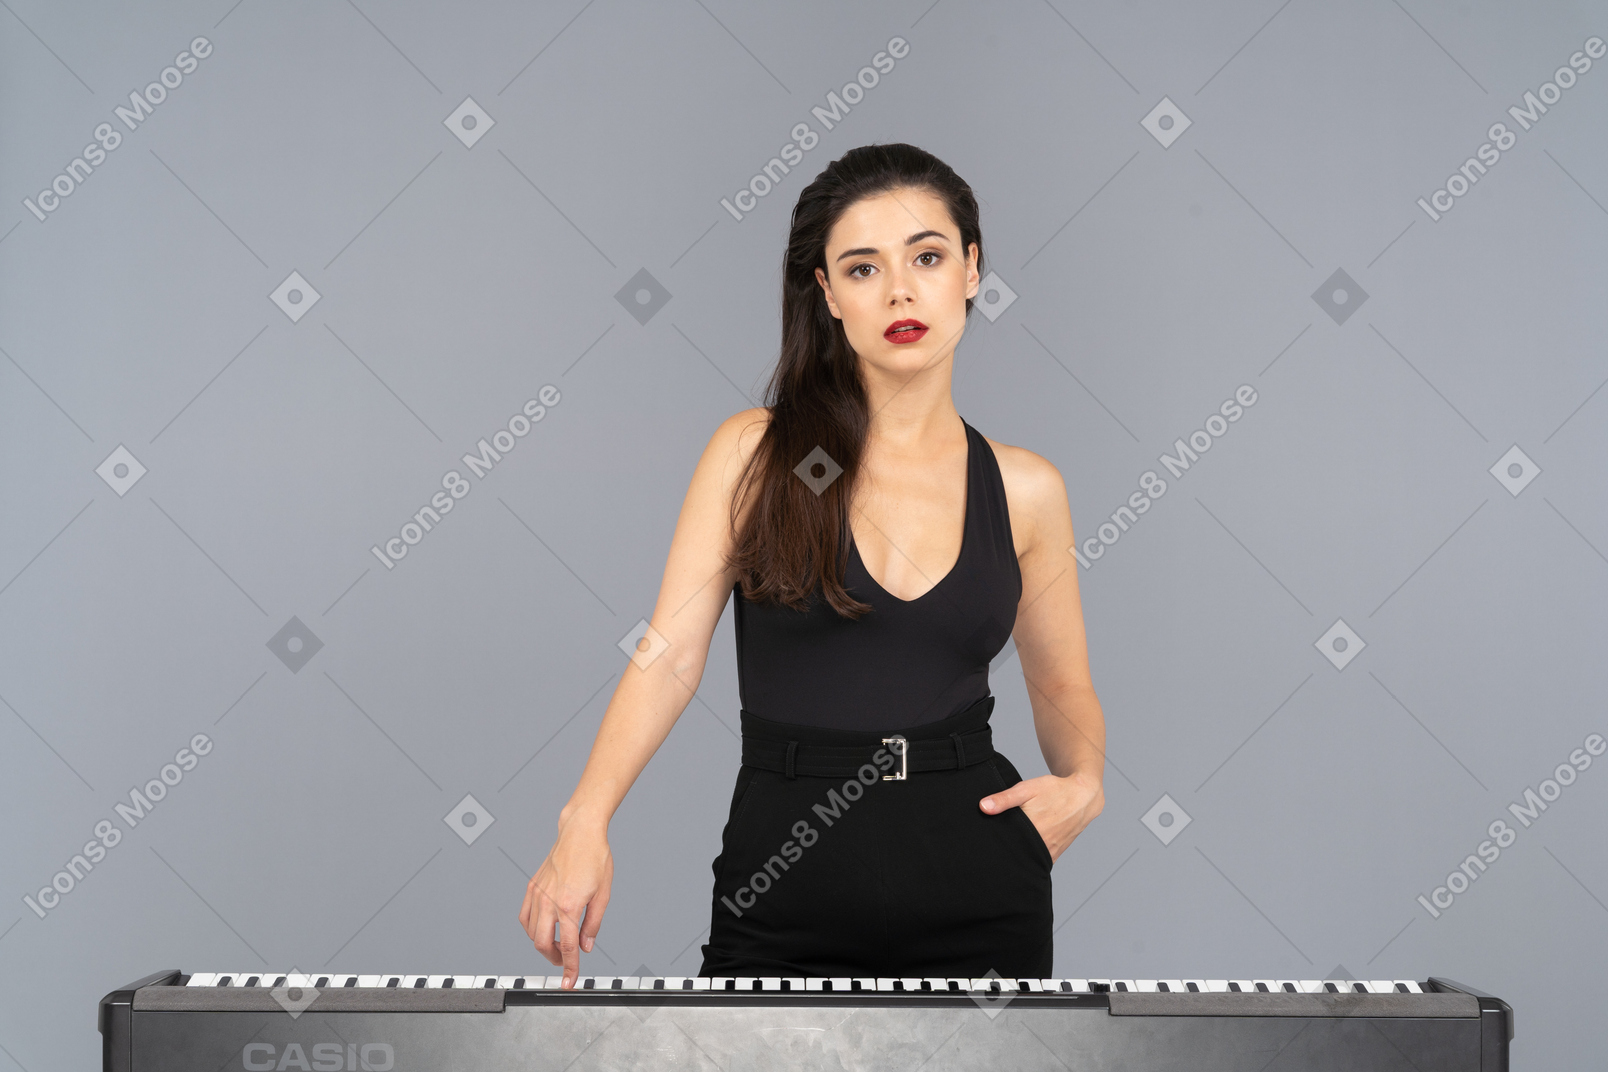 피아노의 키를 누르면 검은 드레스에 젊은 아가씨의 전면보기